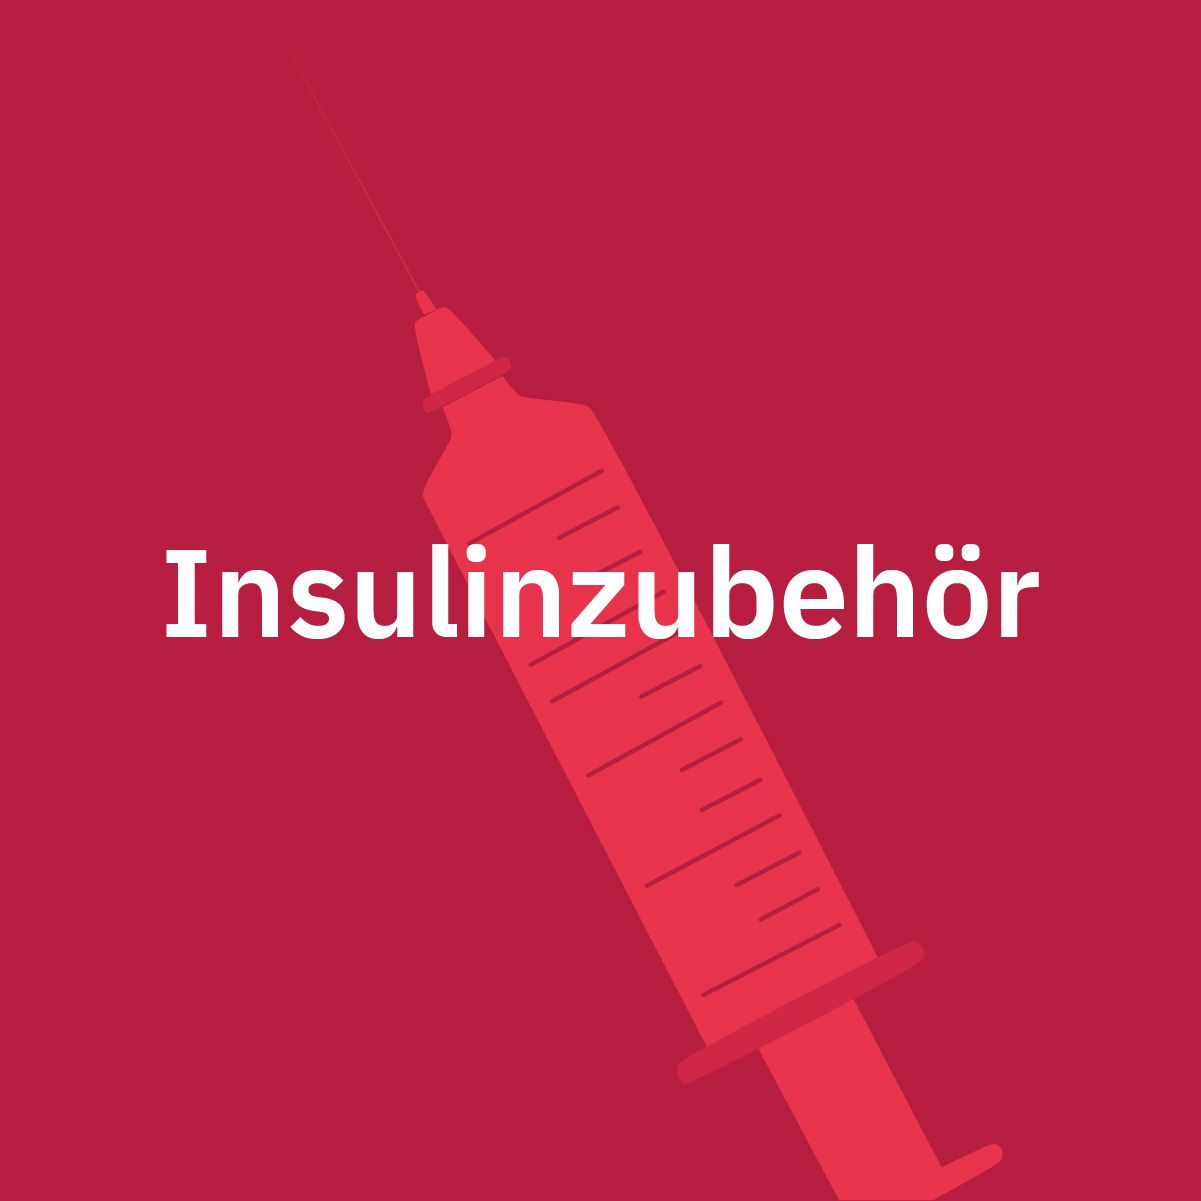 Insulinzubehör